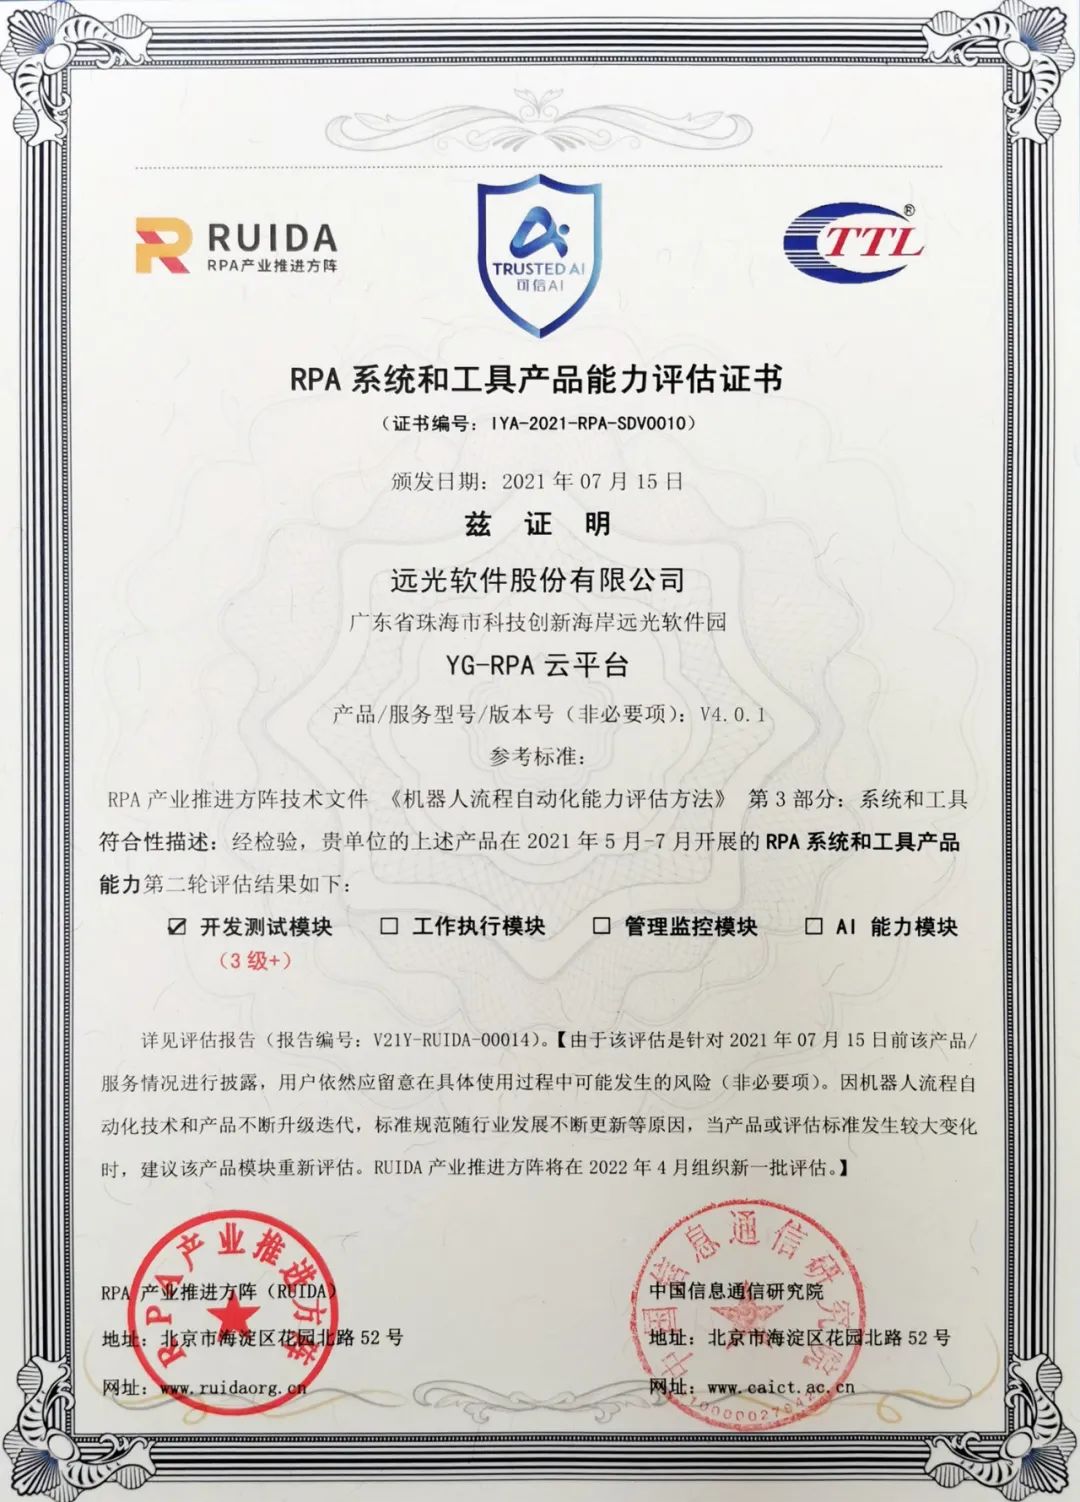 遠光軟件YG-RPA云平臺獲中國信通院最高等級“3+”認證